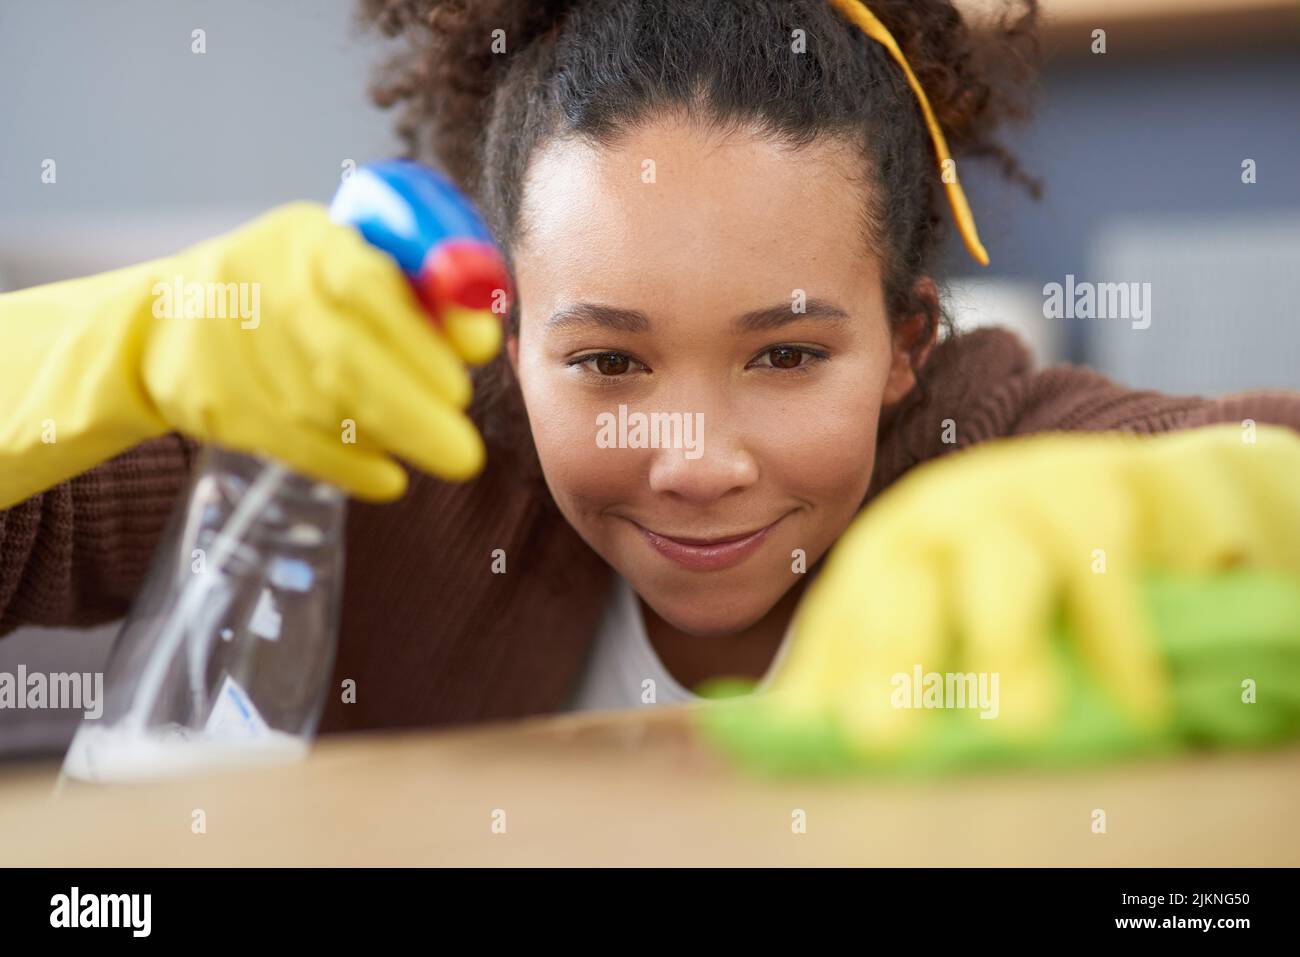 Scusa i germi, hai scelto la casa sbagliata. Una donna che indossa guanti e tiene una bottiglia spray mentre pulisce una superficie di legno a casa. Foto Stock